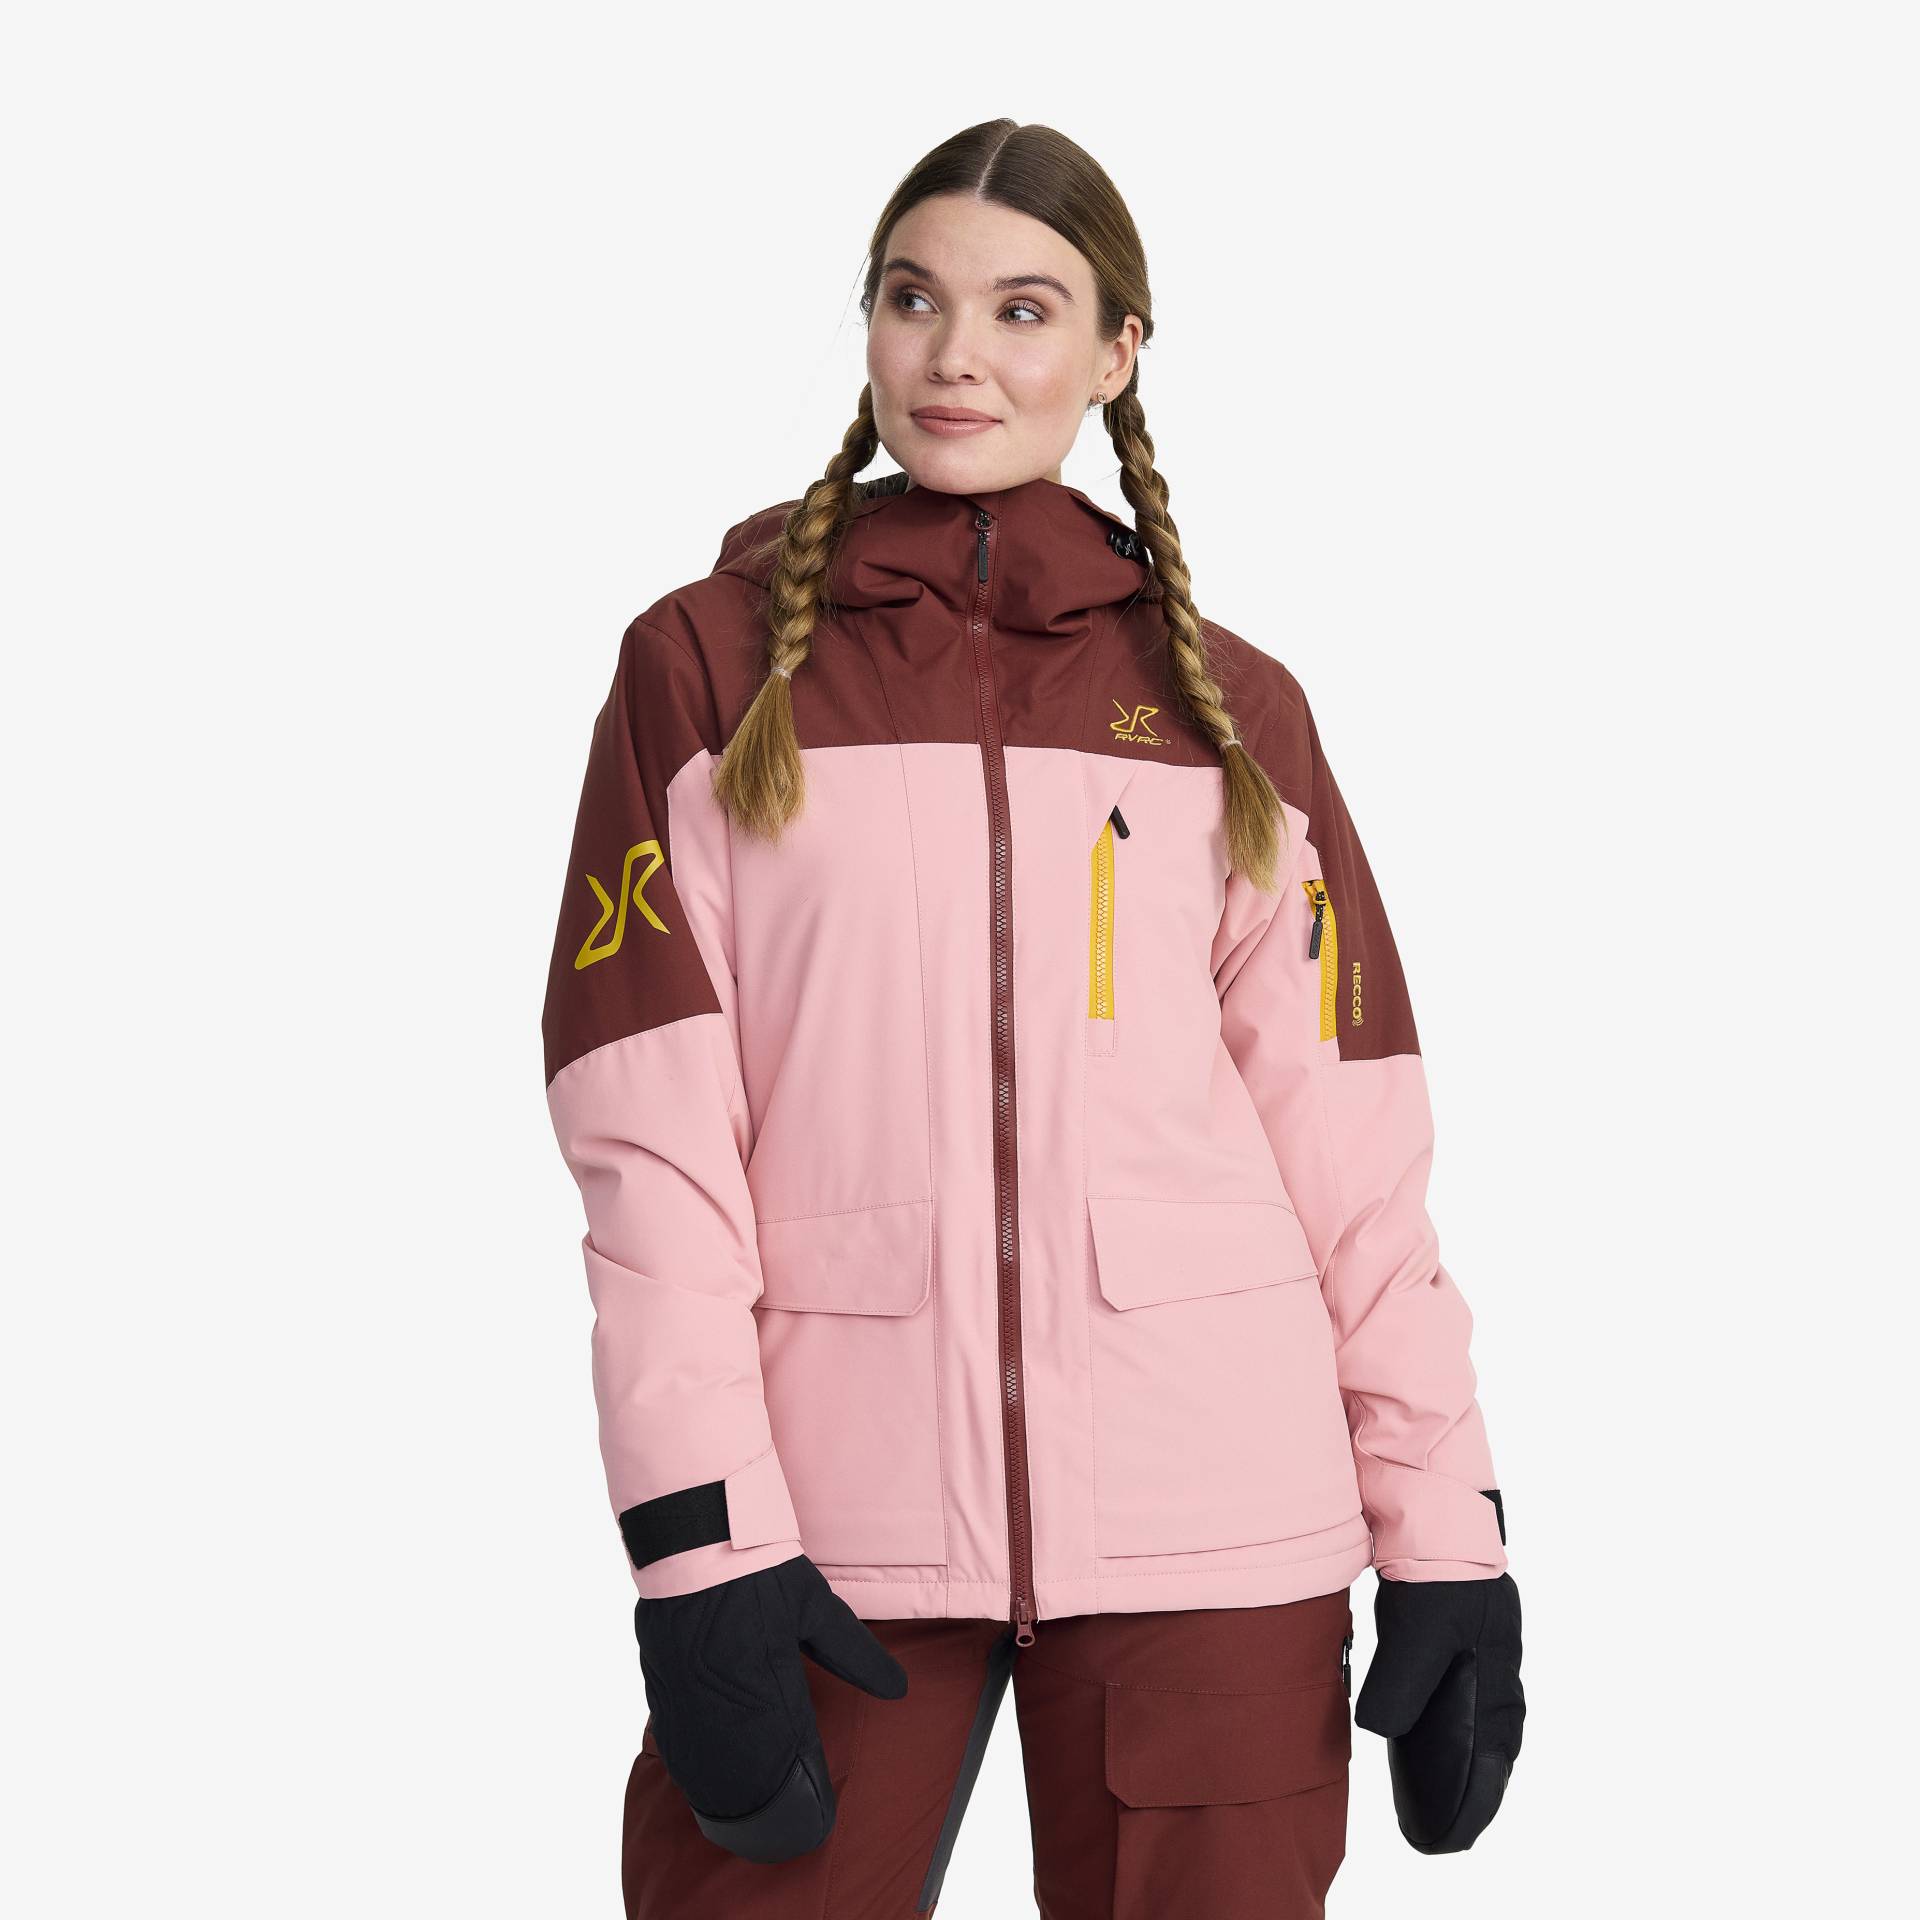 Halo 2L Insulated Ski Jacket Damen Blush, Größe:3XL - Skijacken von RevolutionRace